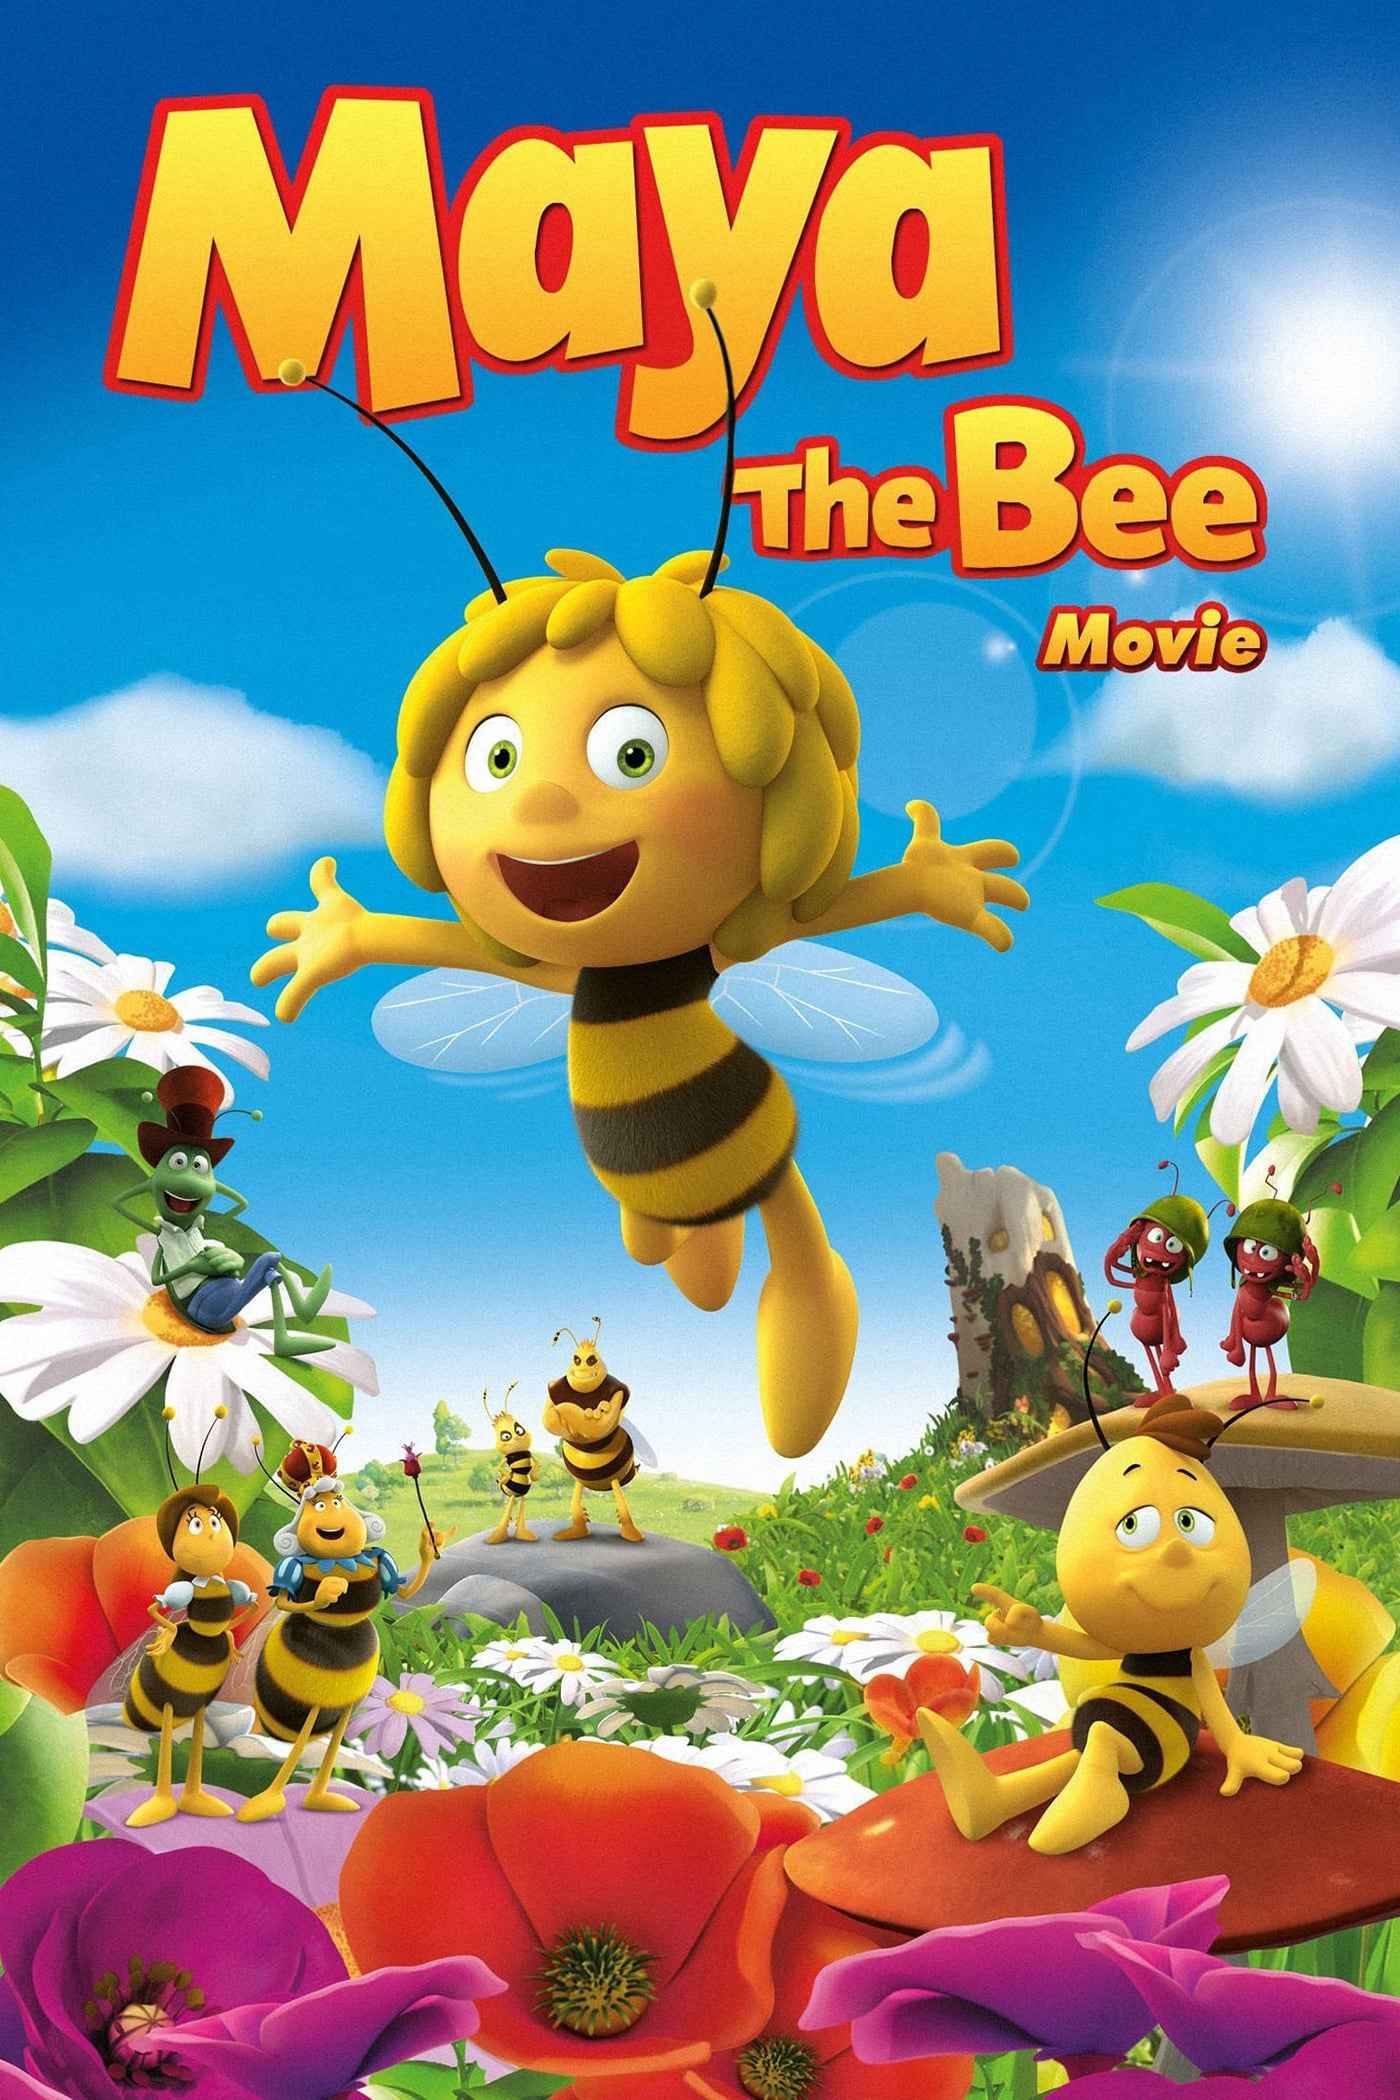 Chú Ong Maya - Maya the Bee Movie (2014)